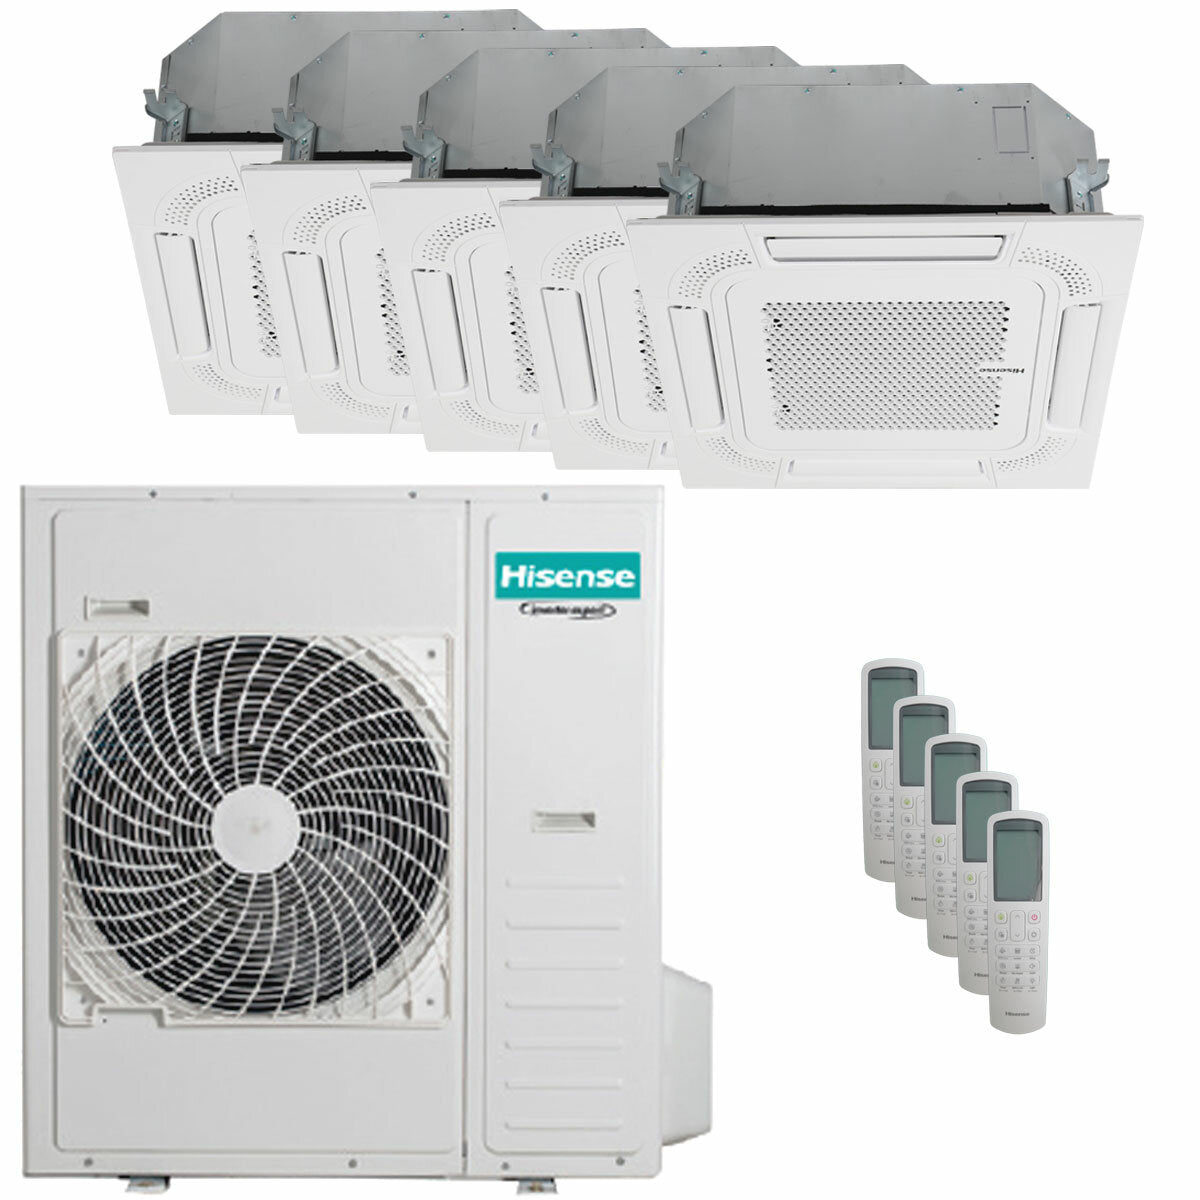 Hisense air conditioner ACT penta split 9000+9000+9000+9000+12000 BTU inverter outdoor unit 12.5 kW